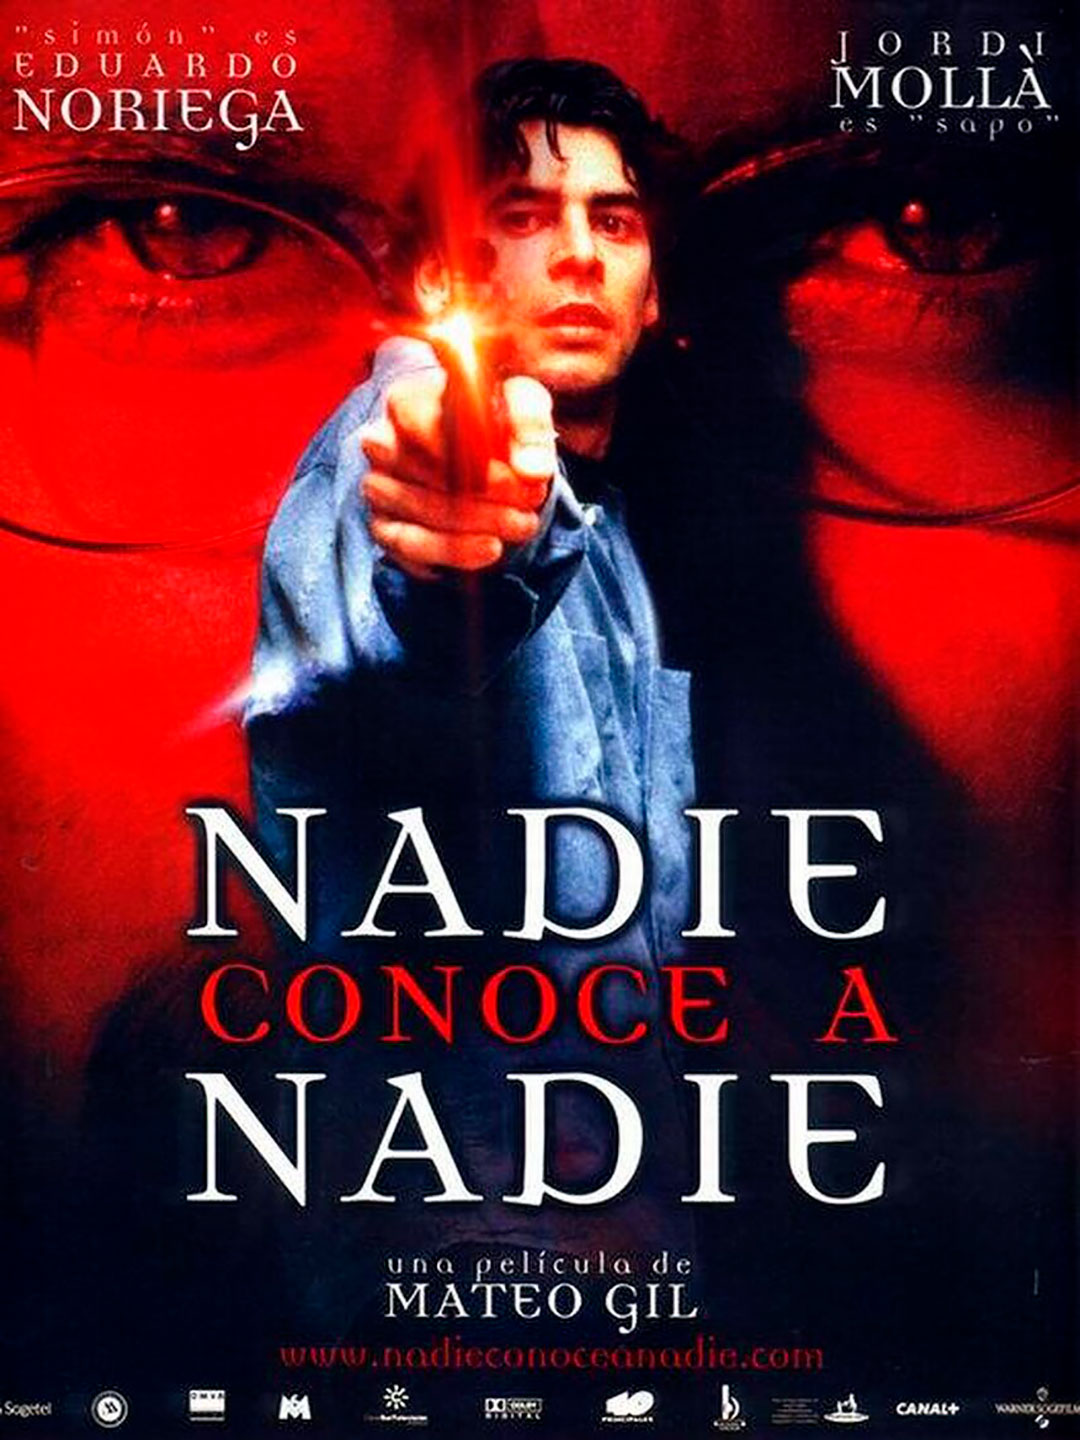 Una de las películas inspiradas en el caso fue la española Nadie conoce a nadie, de Mateo Gil, estrenada en 1999 y que ganó un premio Goya